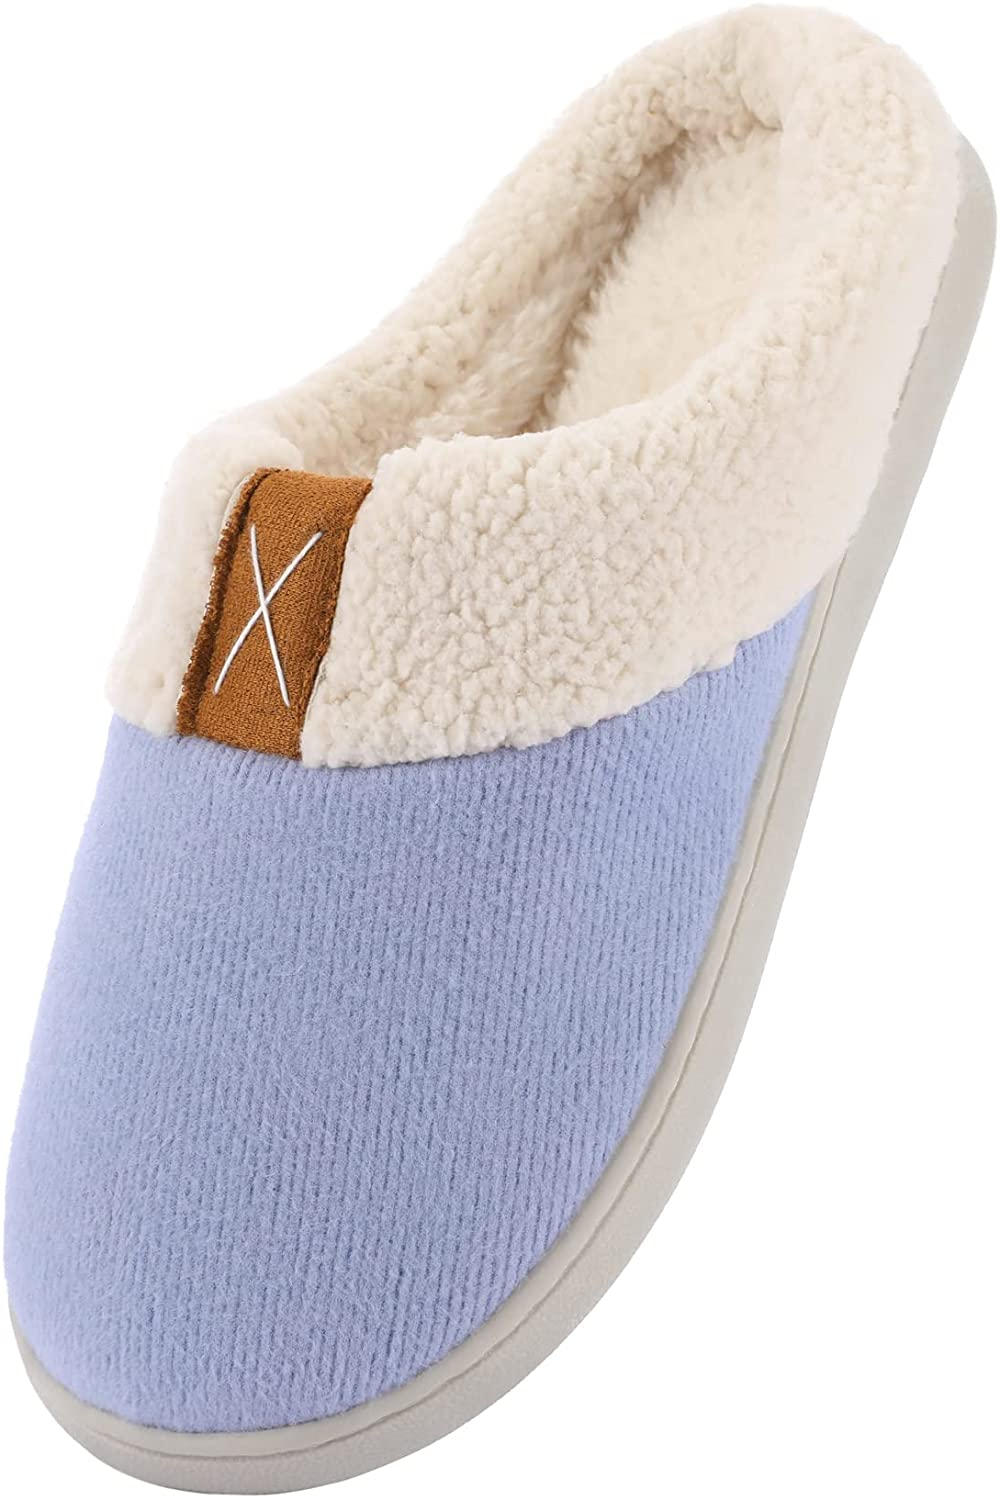 Ekouaer Womens Slippers Memory Foam Fleece Lined Slipper Warm Anti-Skid Rubber Sole Fuzzy House Shoes